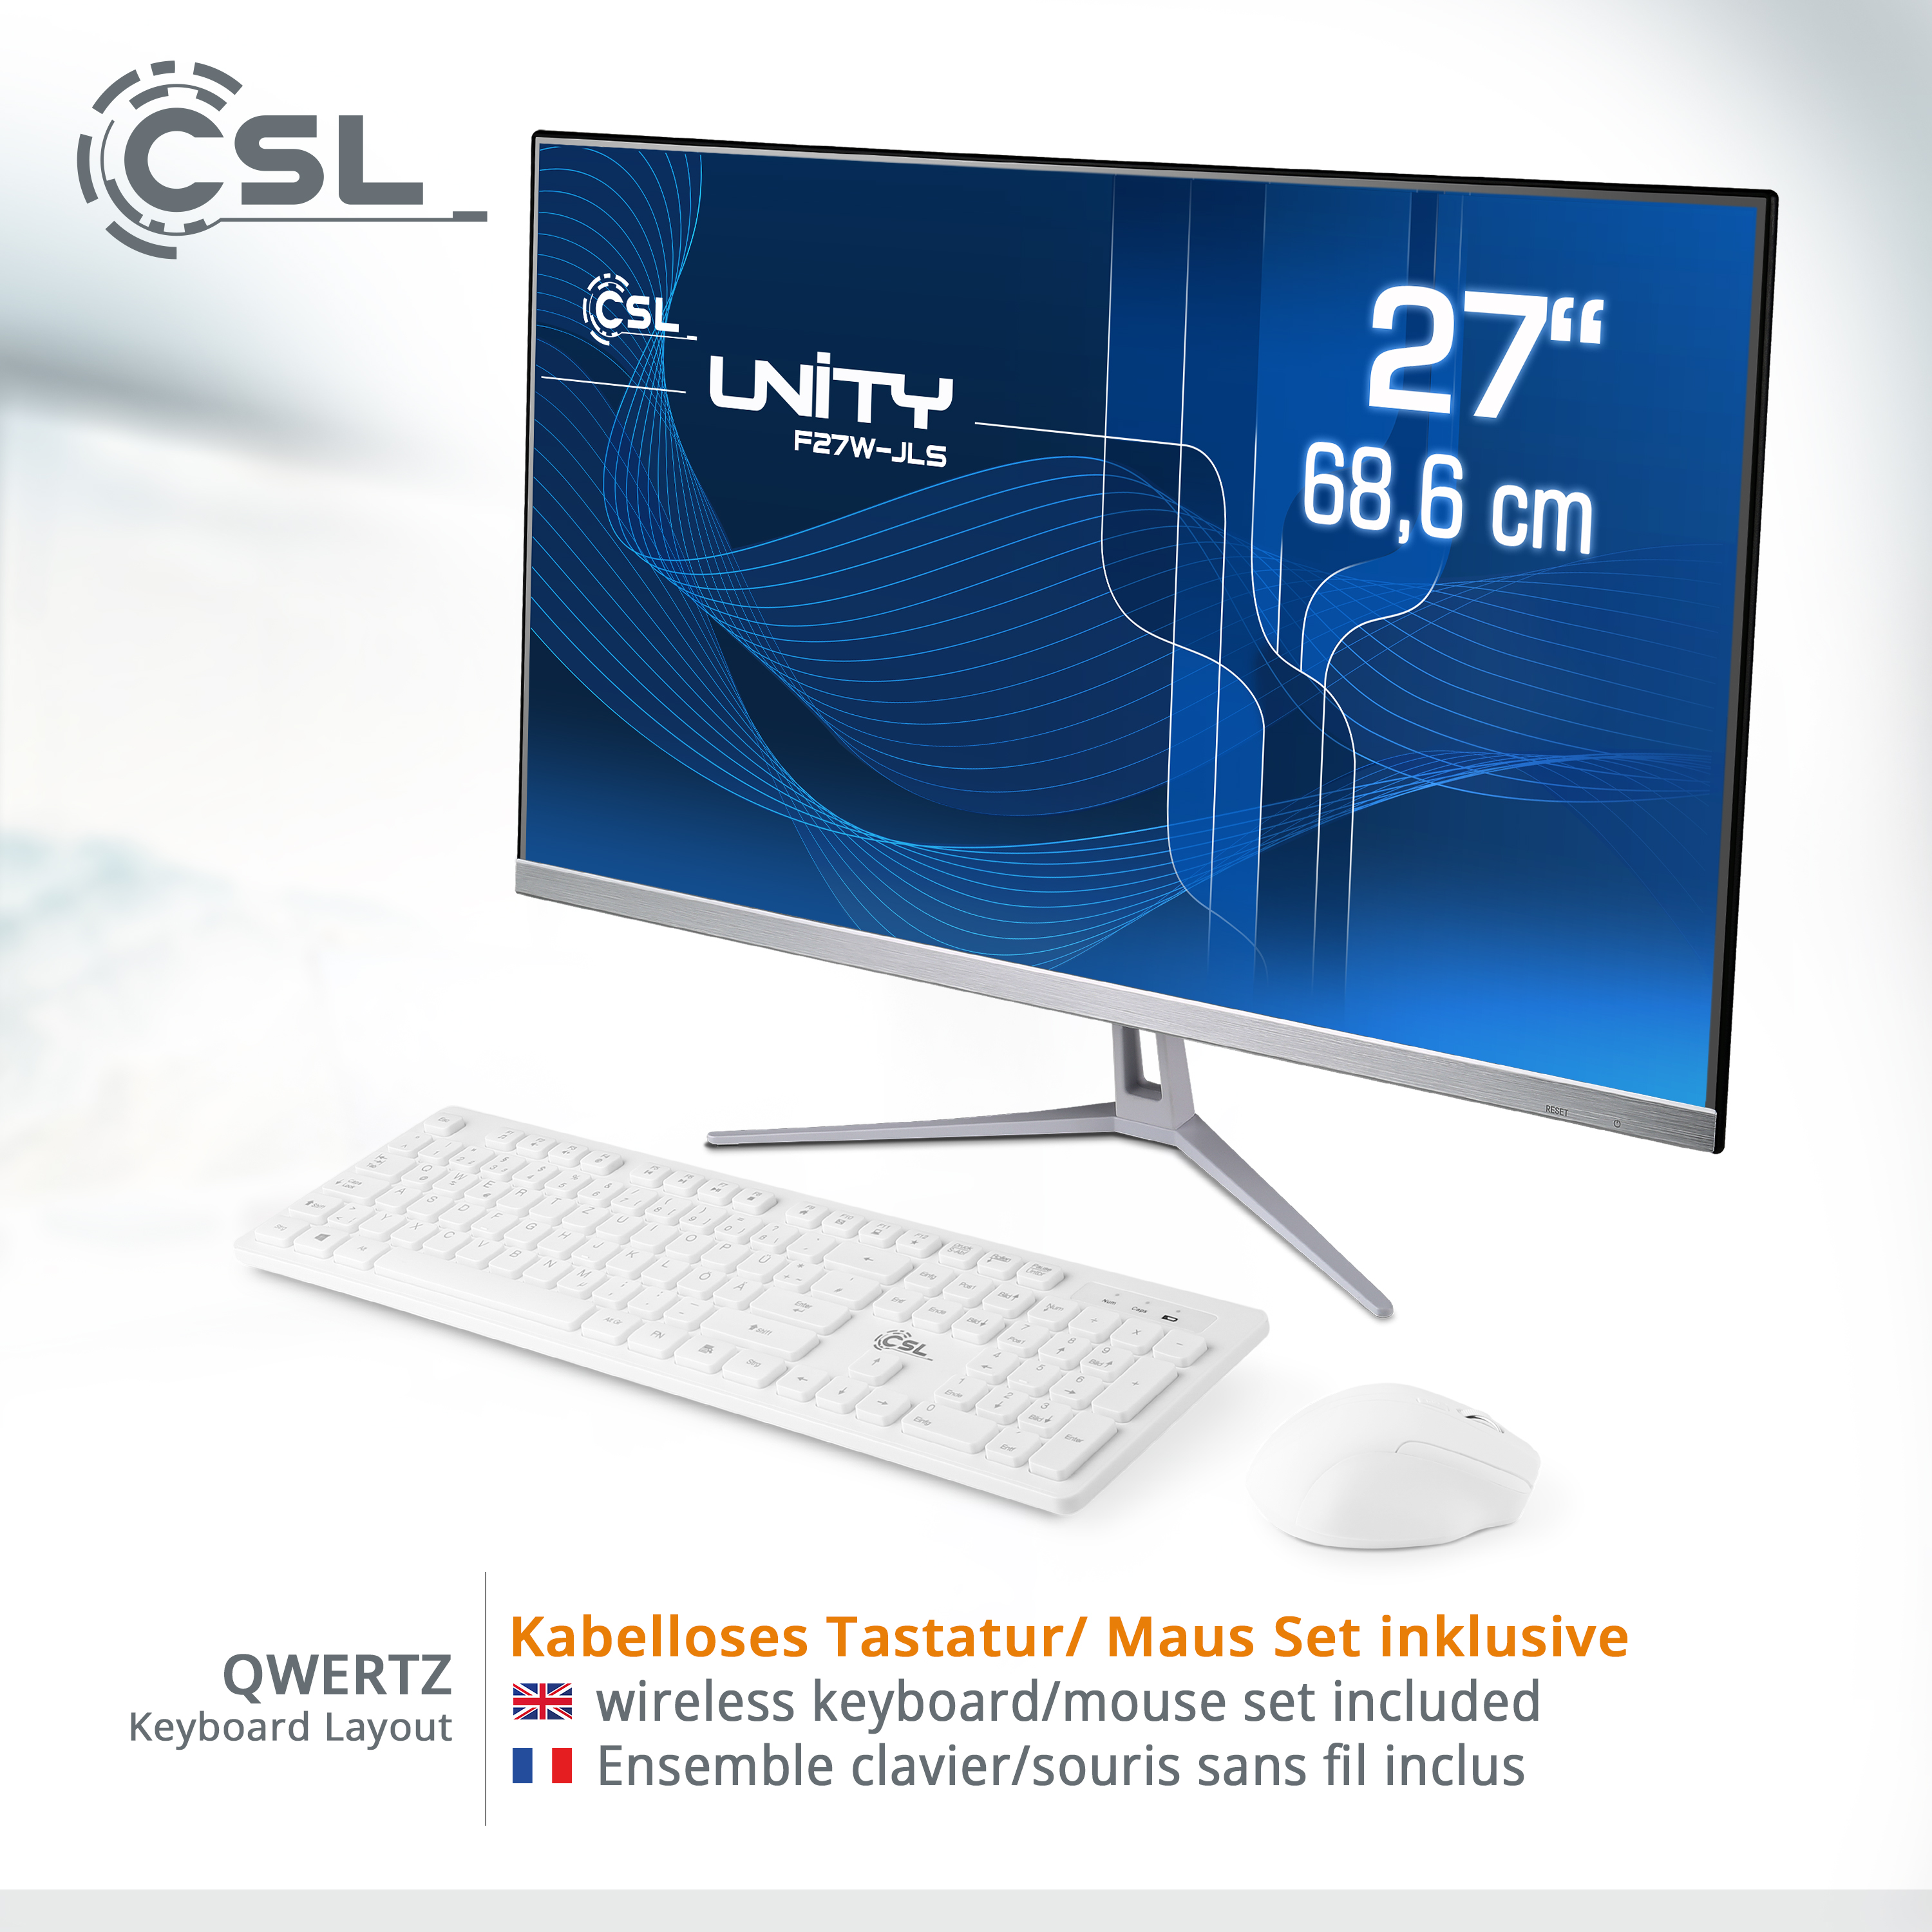 CSL Unity F27W-JLS Pentium / GB 16 RAM, Win RAM 10 Display, GB 16 GB weiß GB 27 256 / / SSD, Graphics, Intel® All-in-One-PC Zoll 256 mit Home, UHD